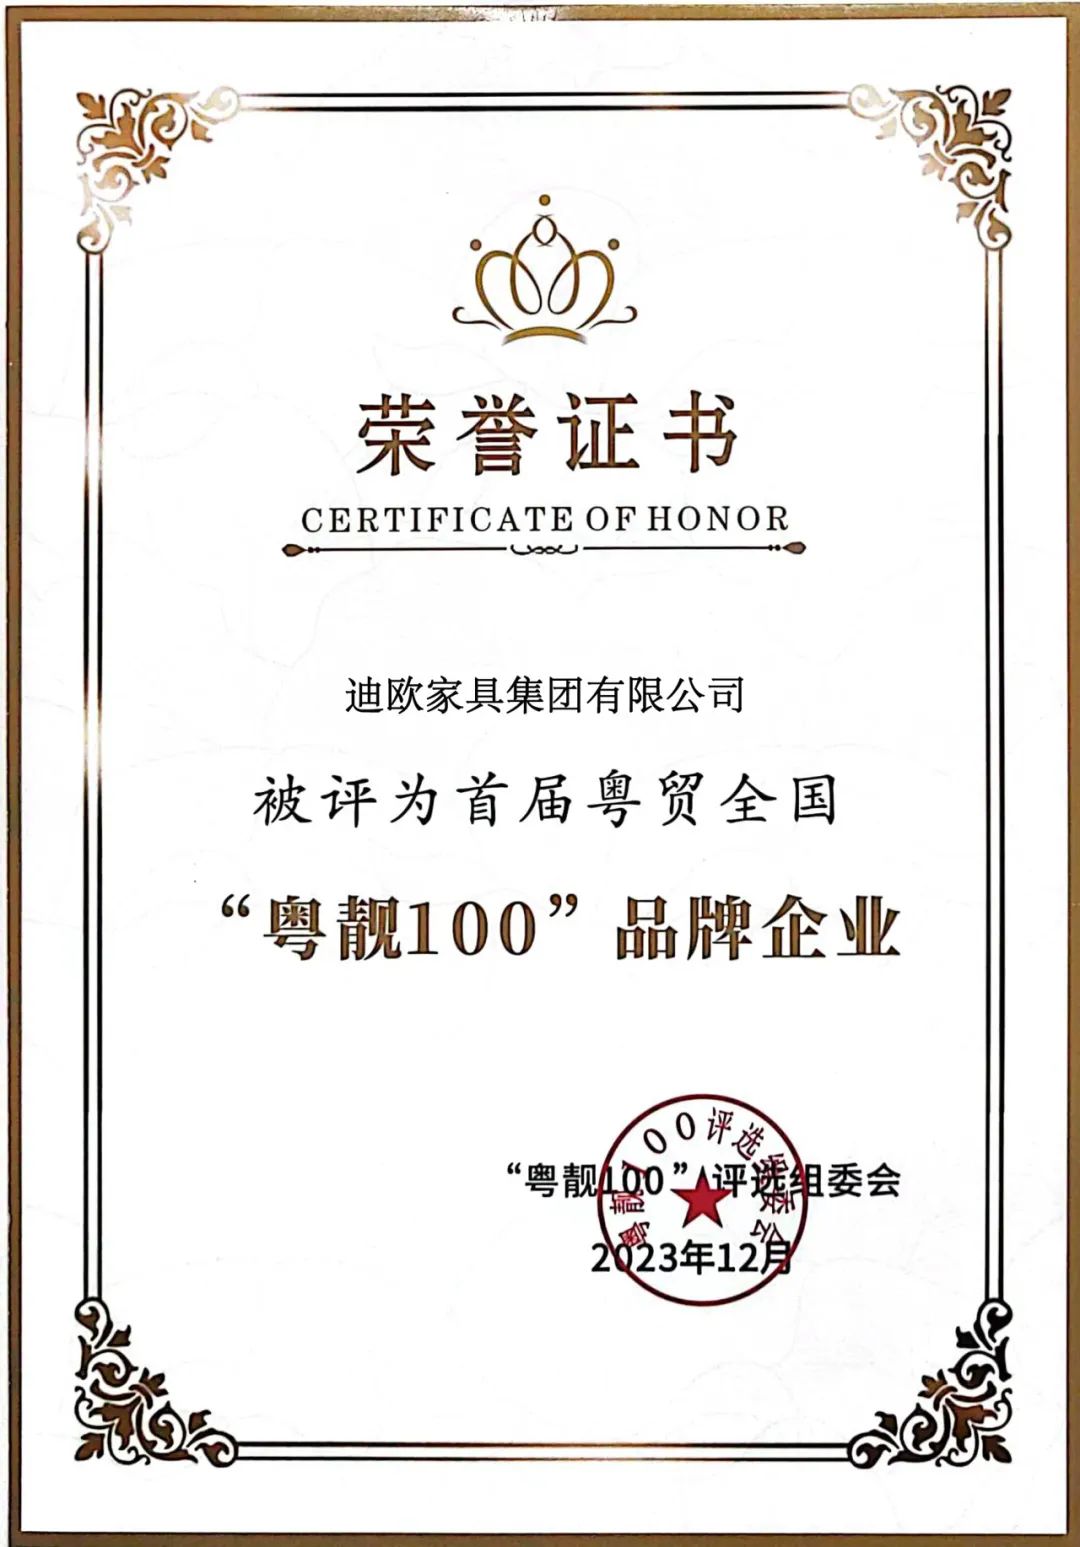 再添奖项！迪欧被评为首届粤贸全国“粤靓100”品牌企业！